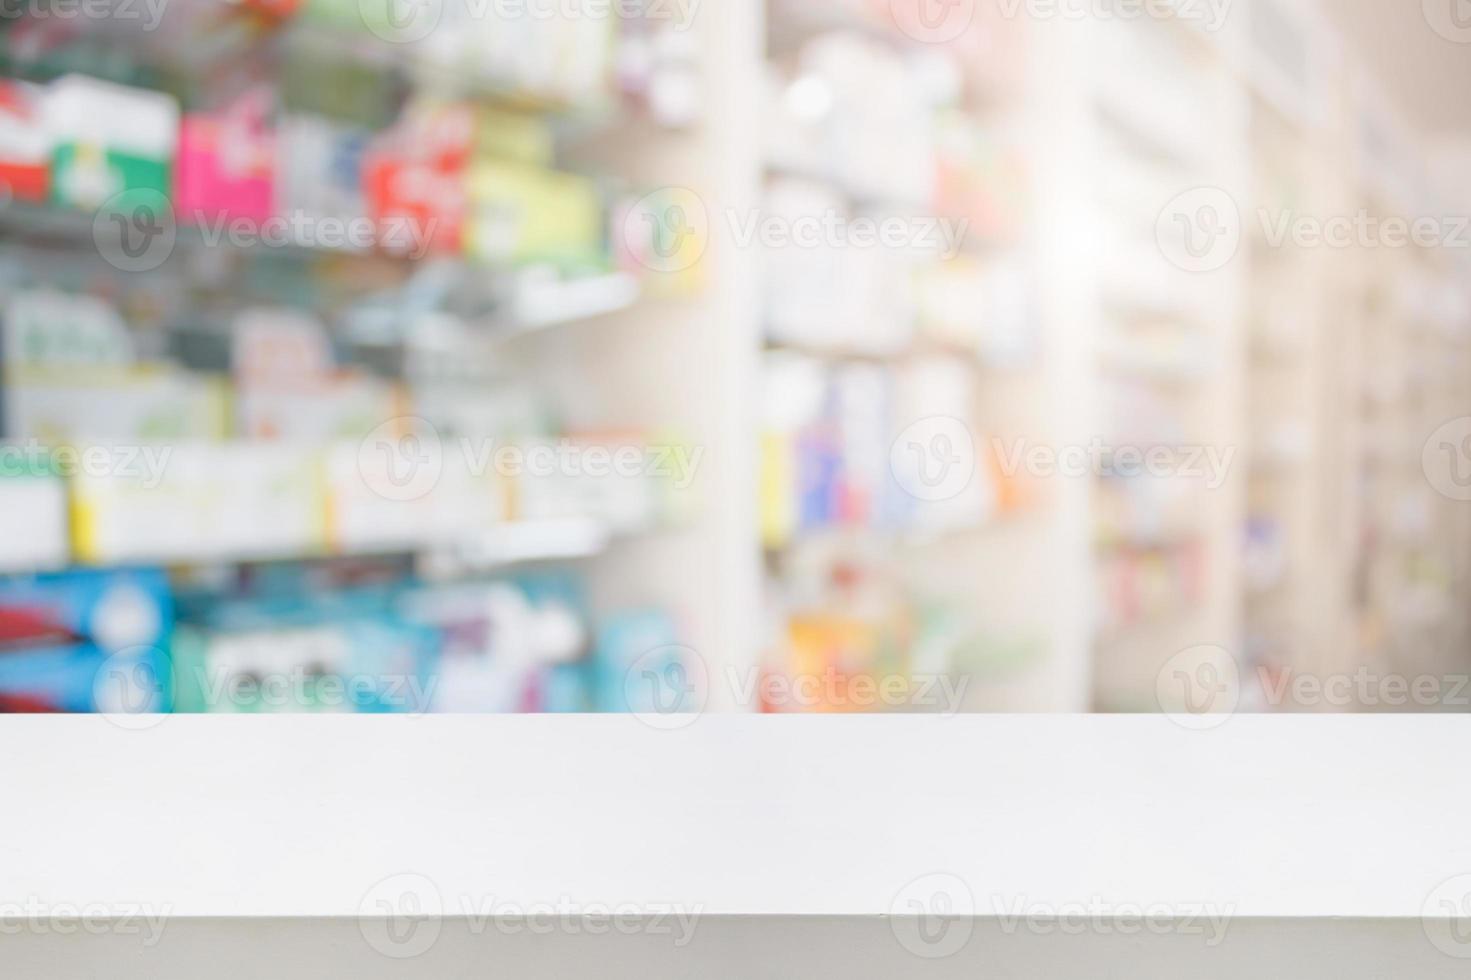 mostrador de la tienda de farmacia con medicamentos borrosos en los estantes foto